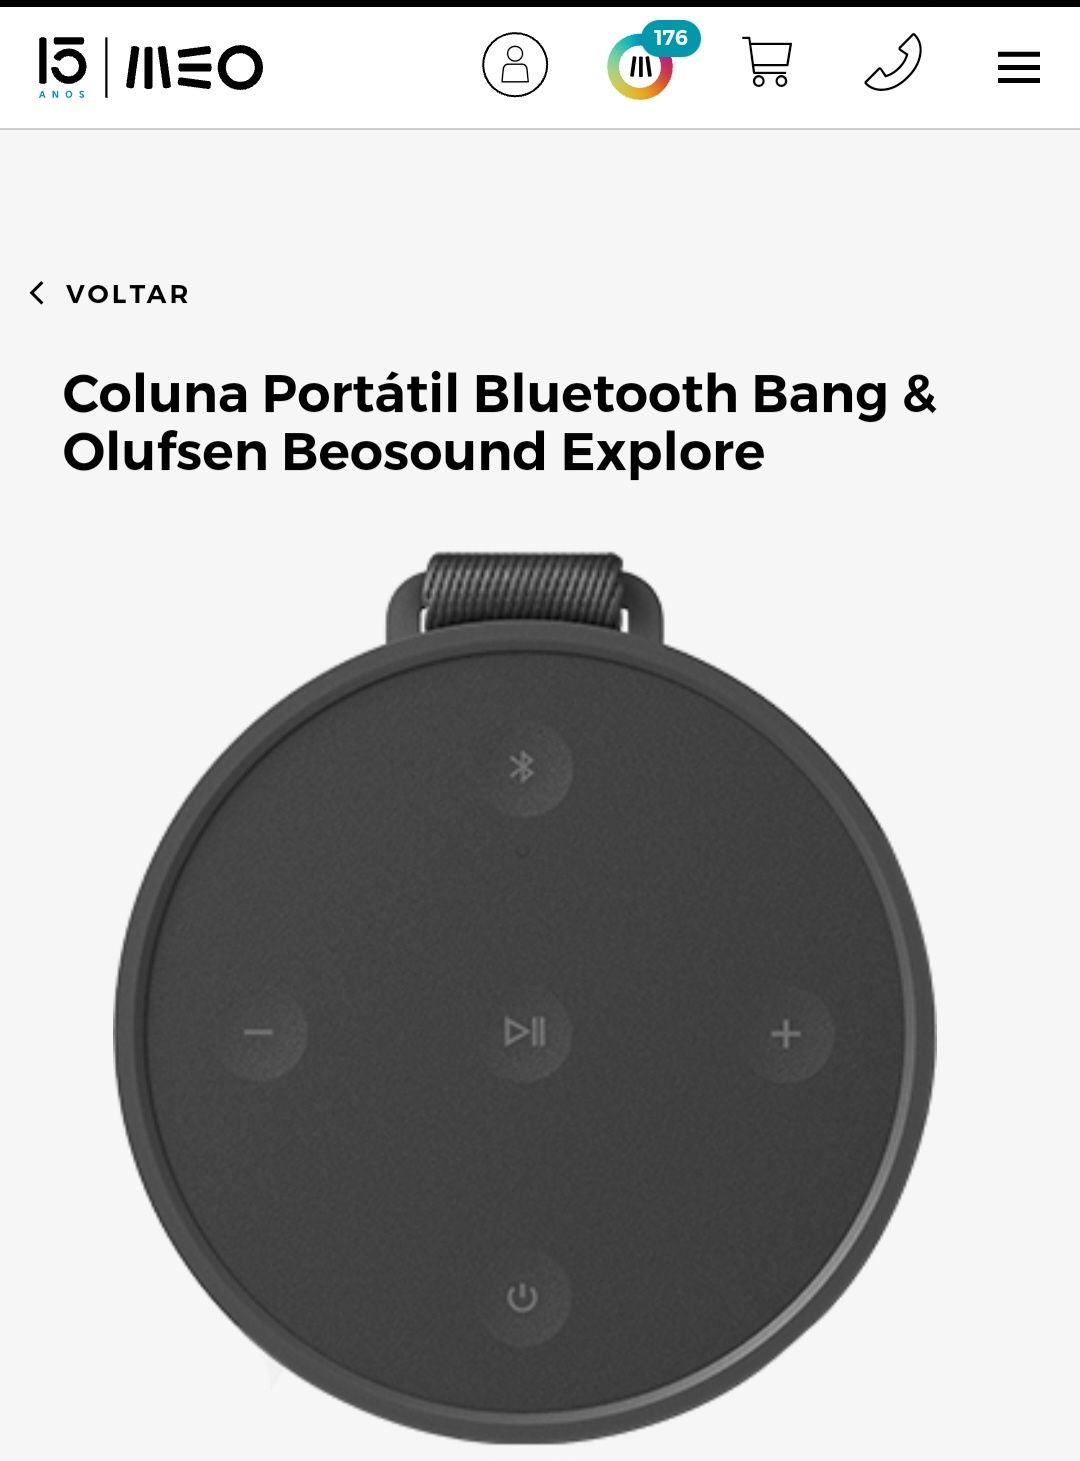 Coluna de som muito estimada Meo Bluetooth